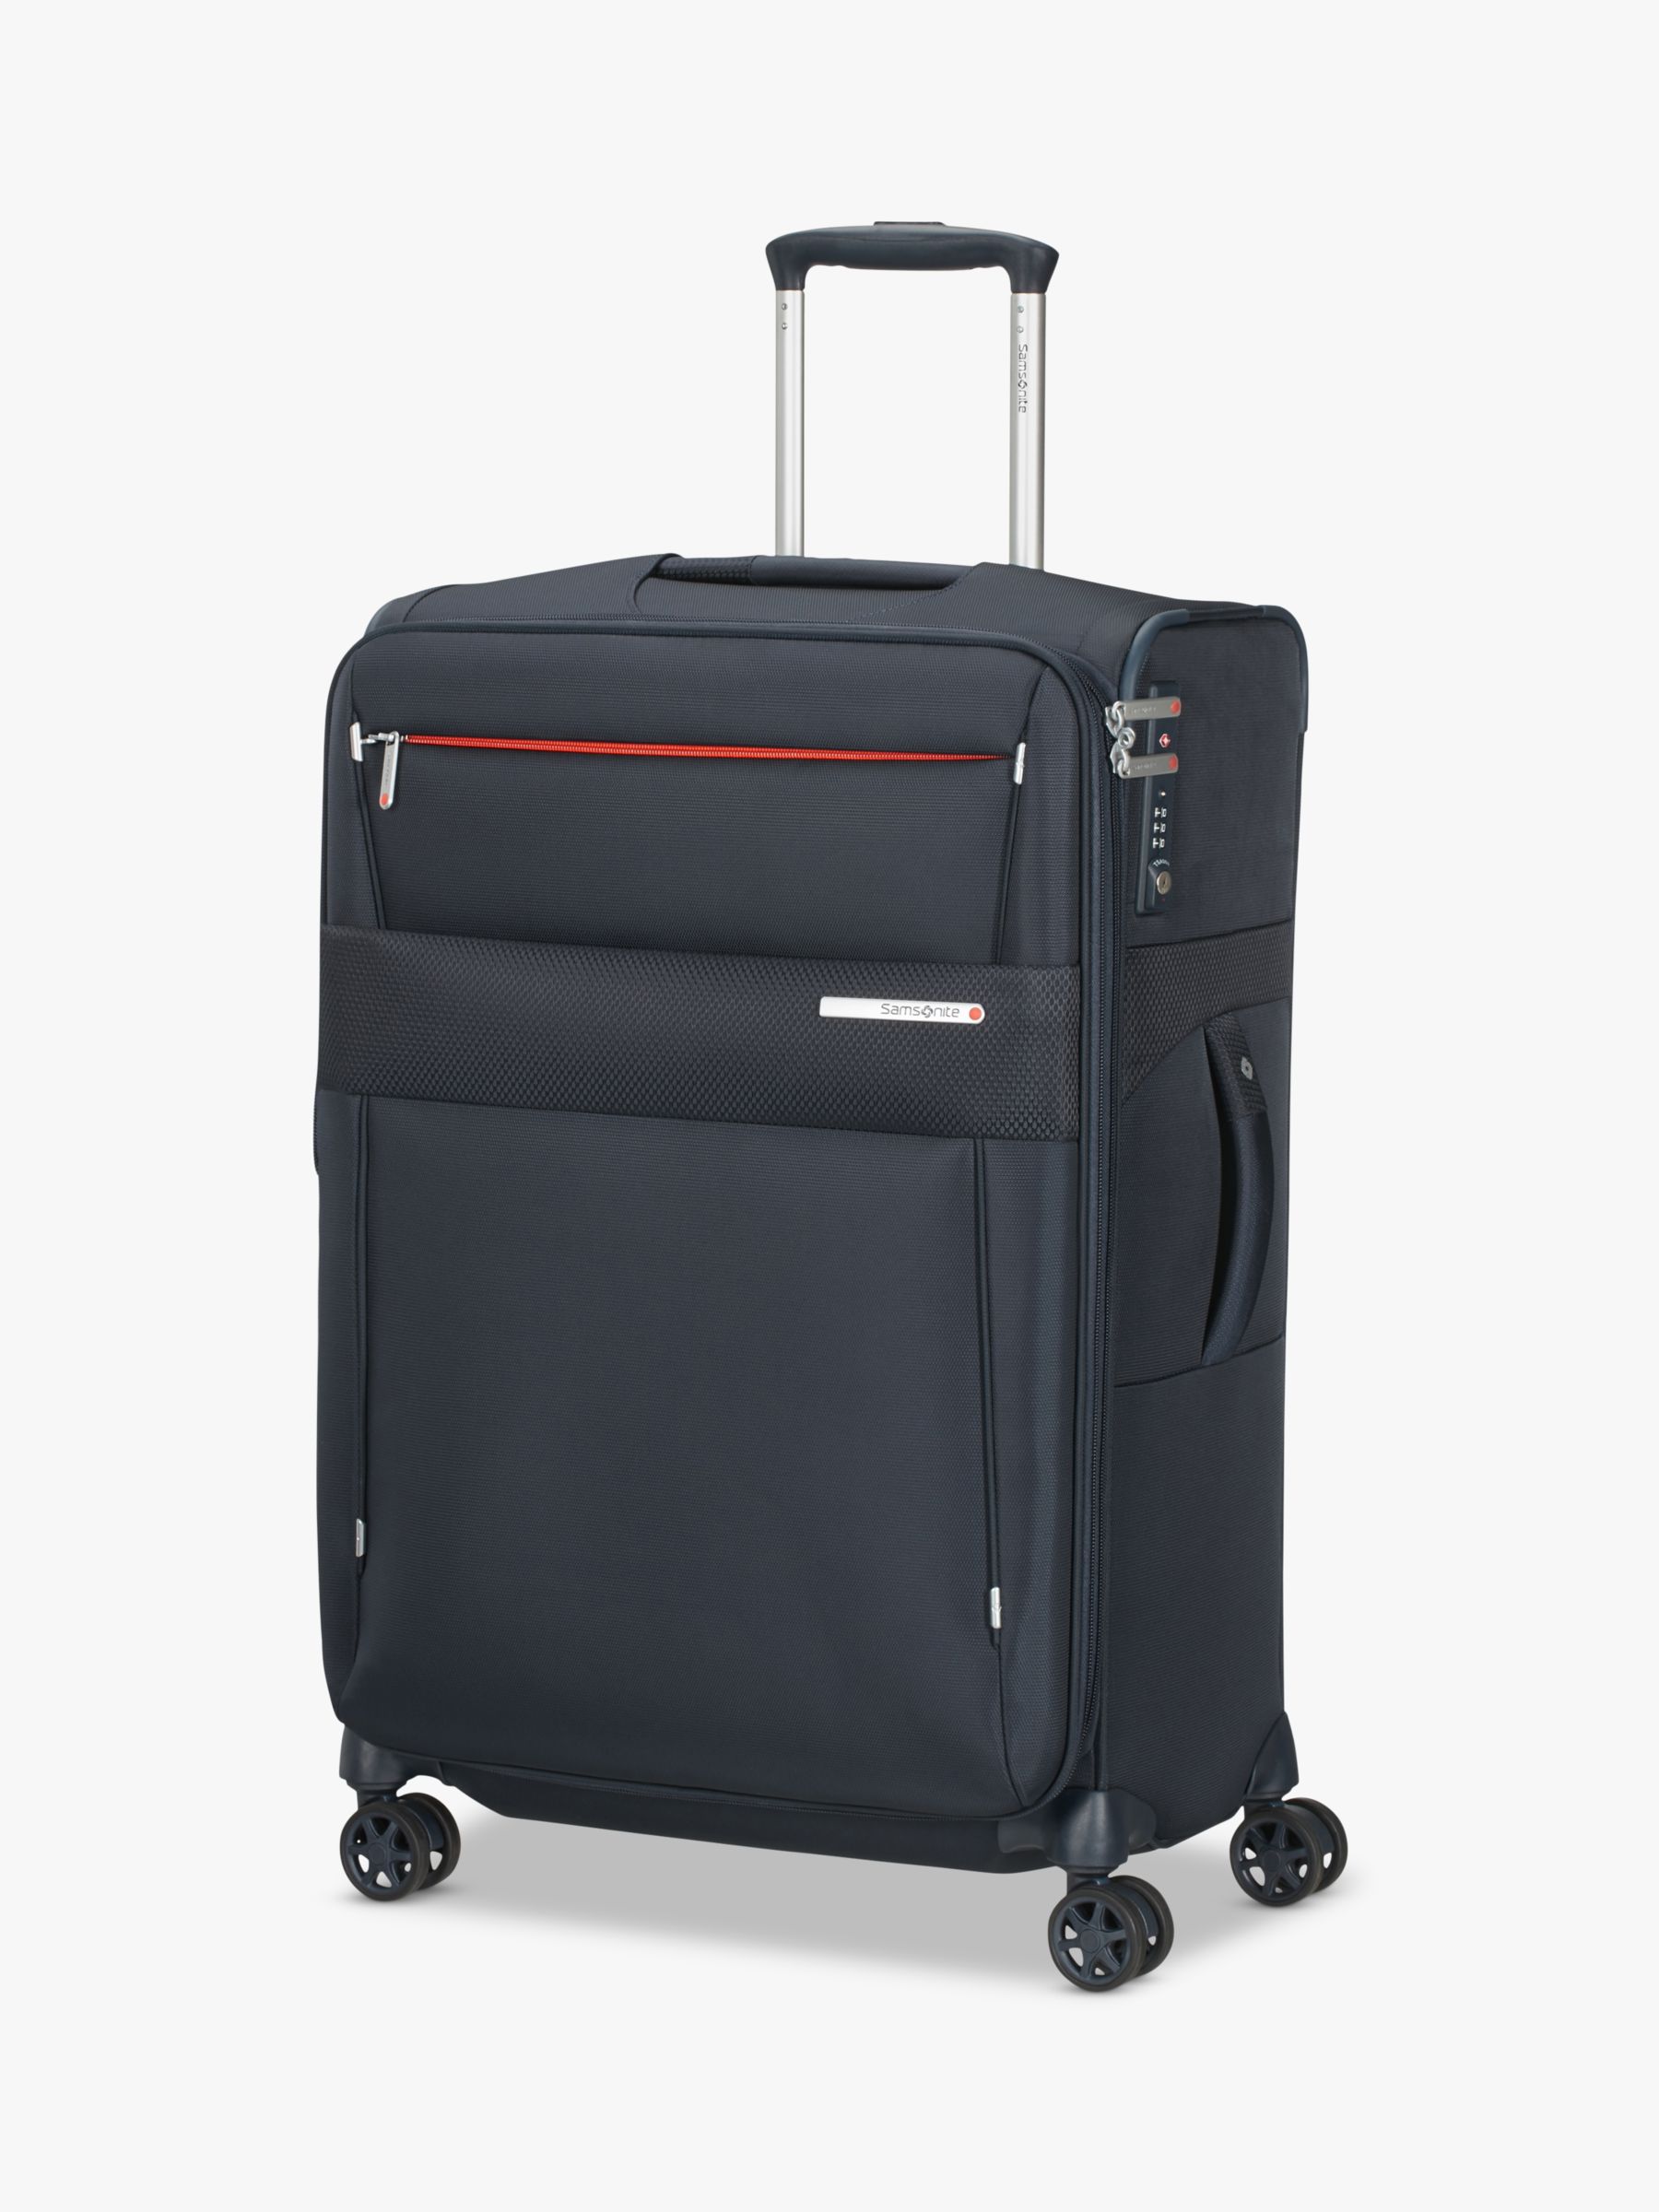 Samsonite Duopack 67cm 4-Wheel Expandable Medium Suitcase at John Lewis & Partners